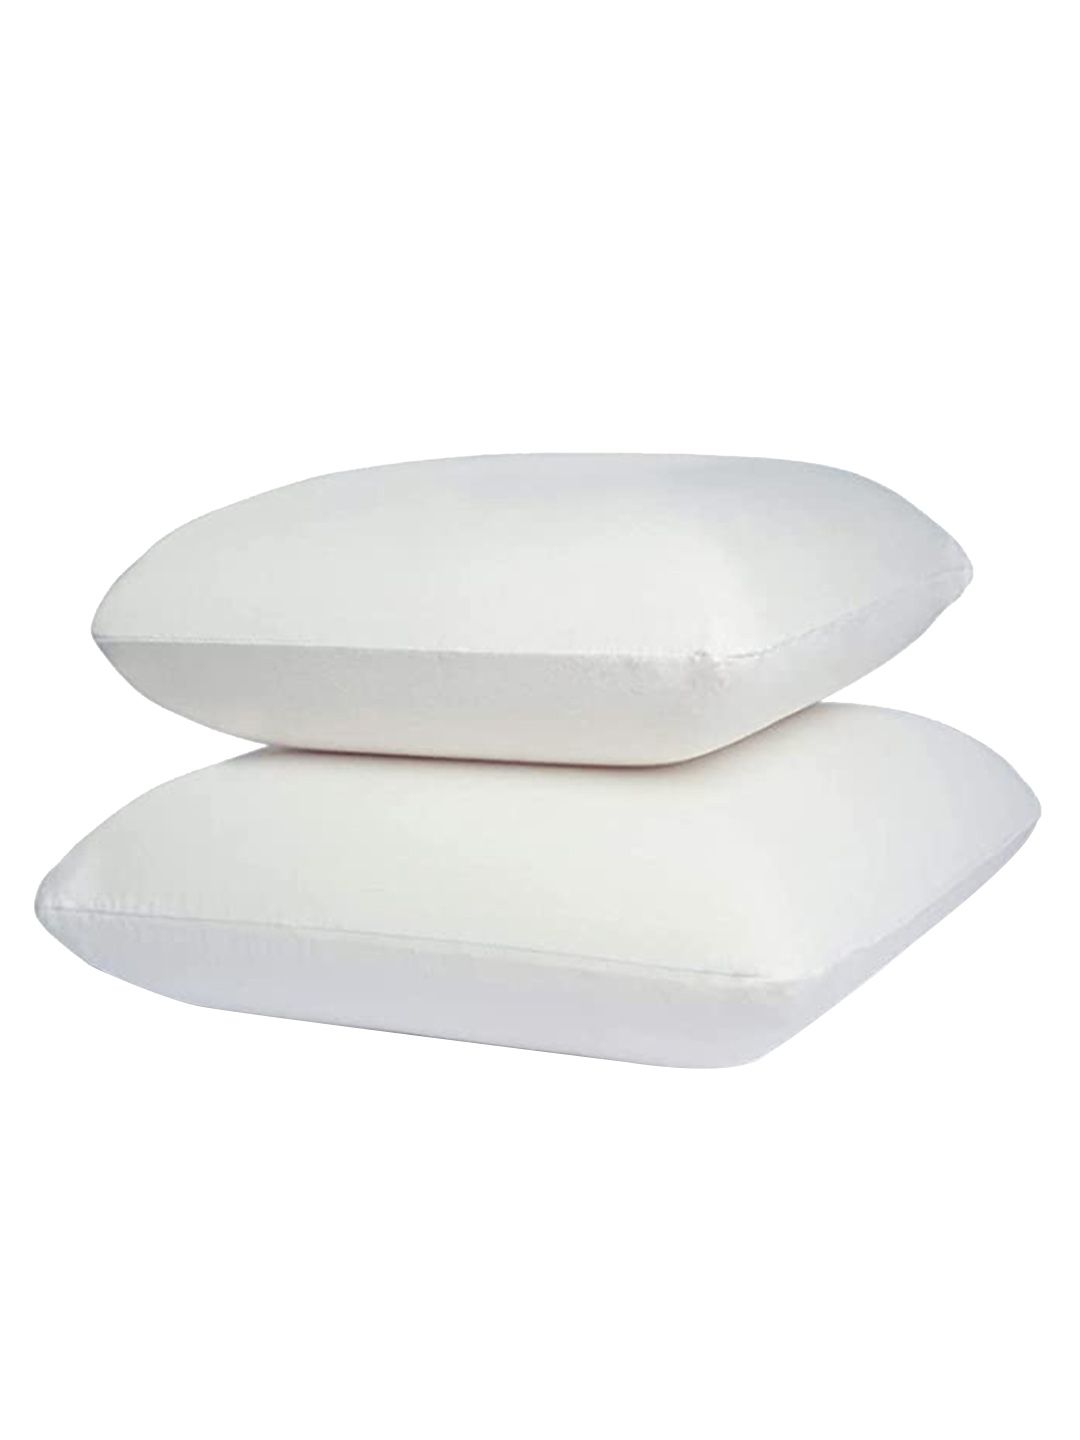 Sleepsia Set of 4 White Solid Rectangle Cotton Pillows Price in India